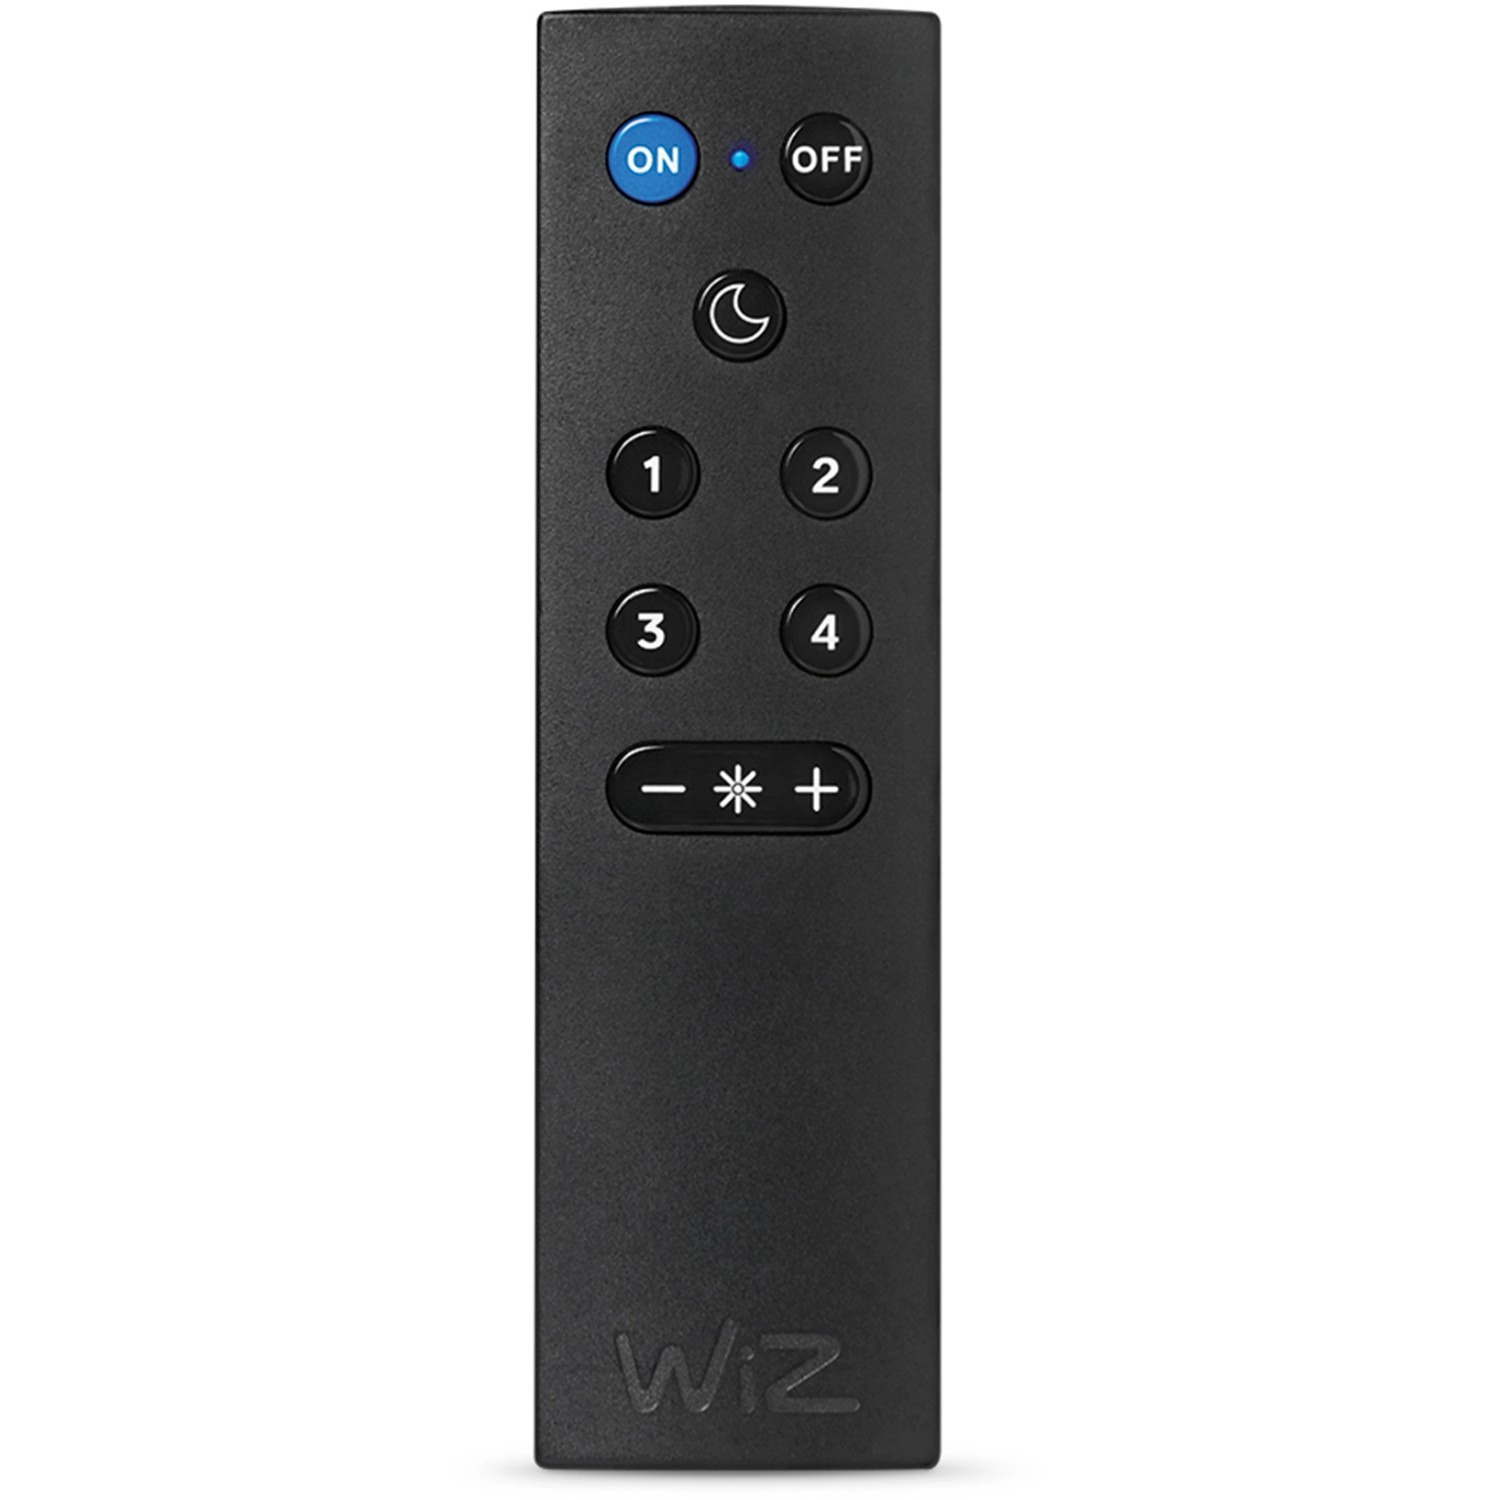 WiZ Smarte Remote Fernbedienung inkl. Batterien Einzelpack von WIZ